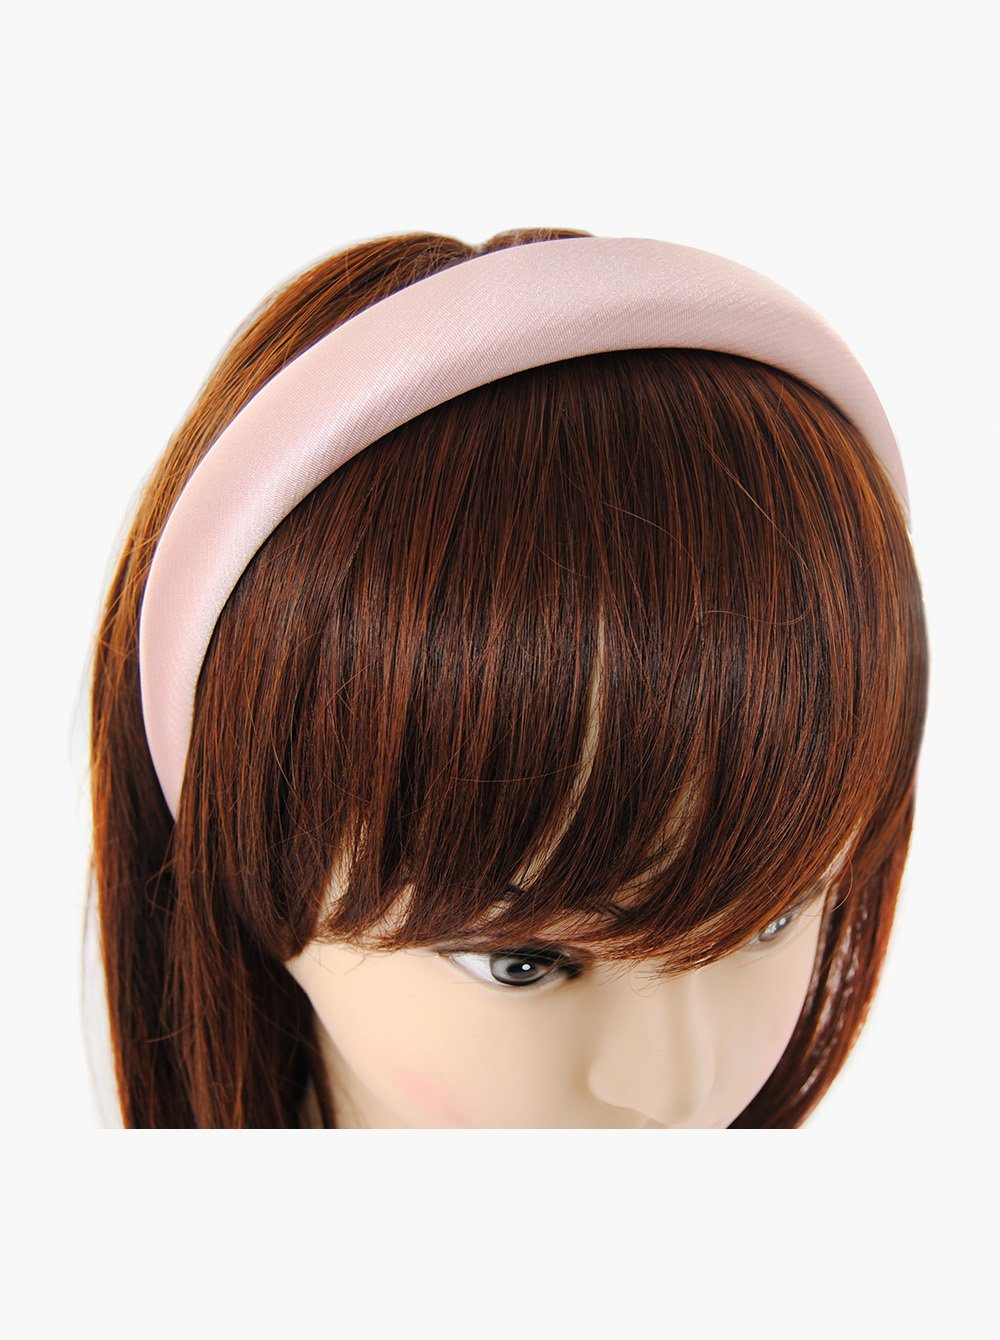 Breiter Metallic-Optik in gepolstertes Haarreif Haarband Hellrosa Metallicfarbe, Damen Haareifen mit axy Haarreif Stoff Vintage